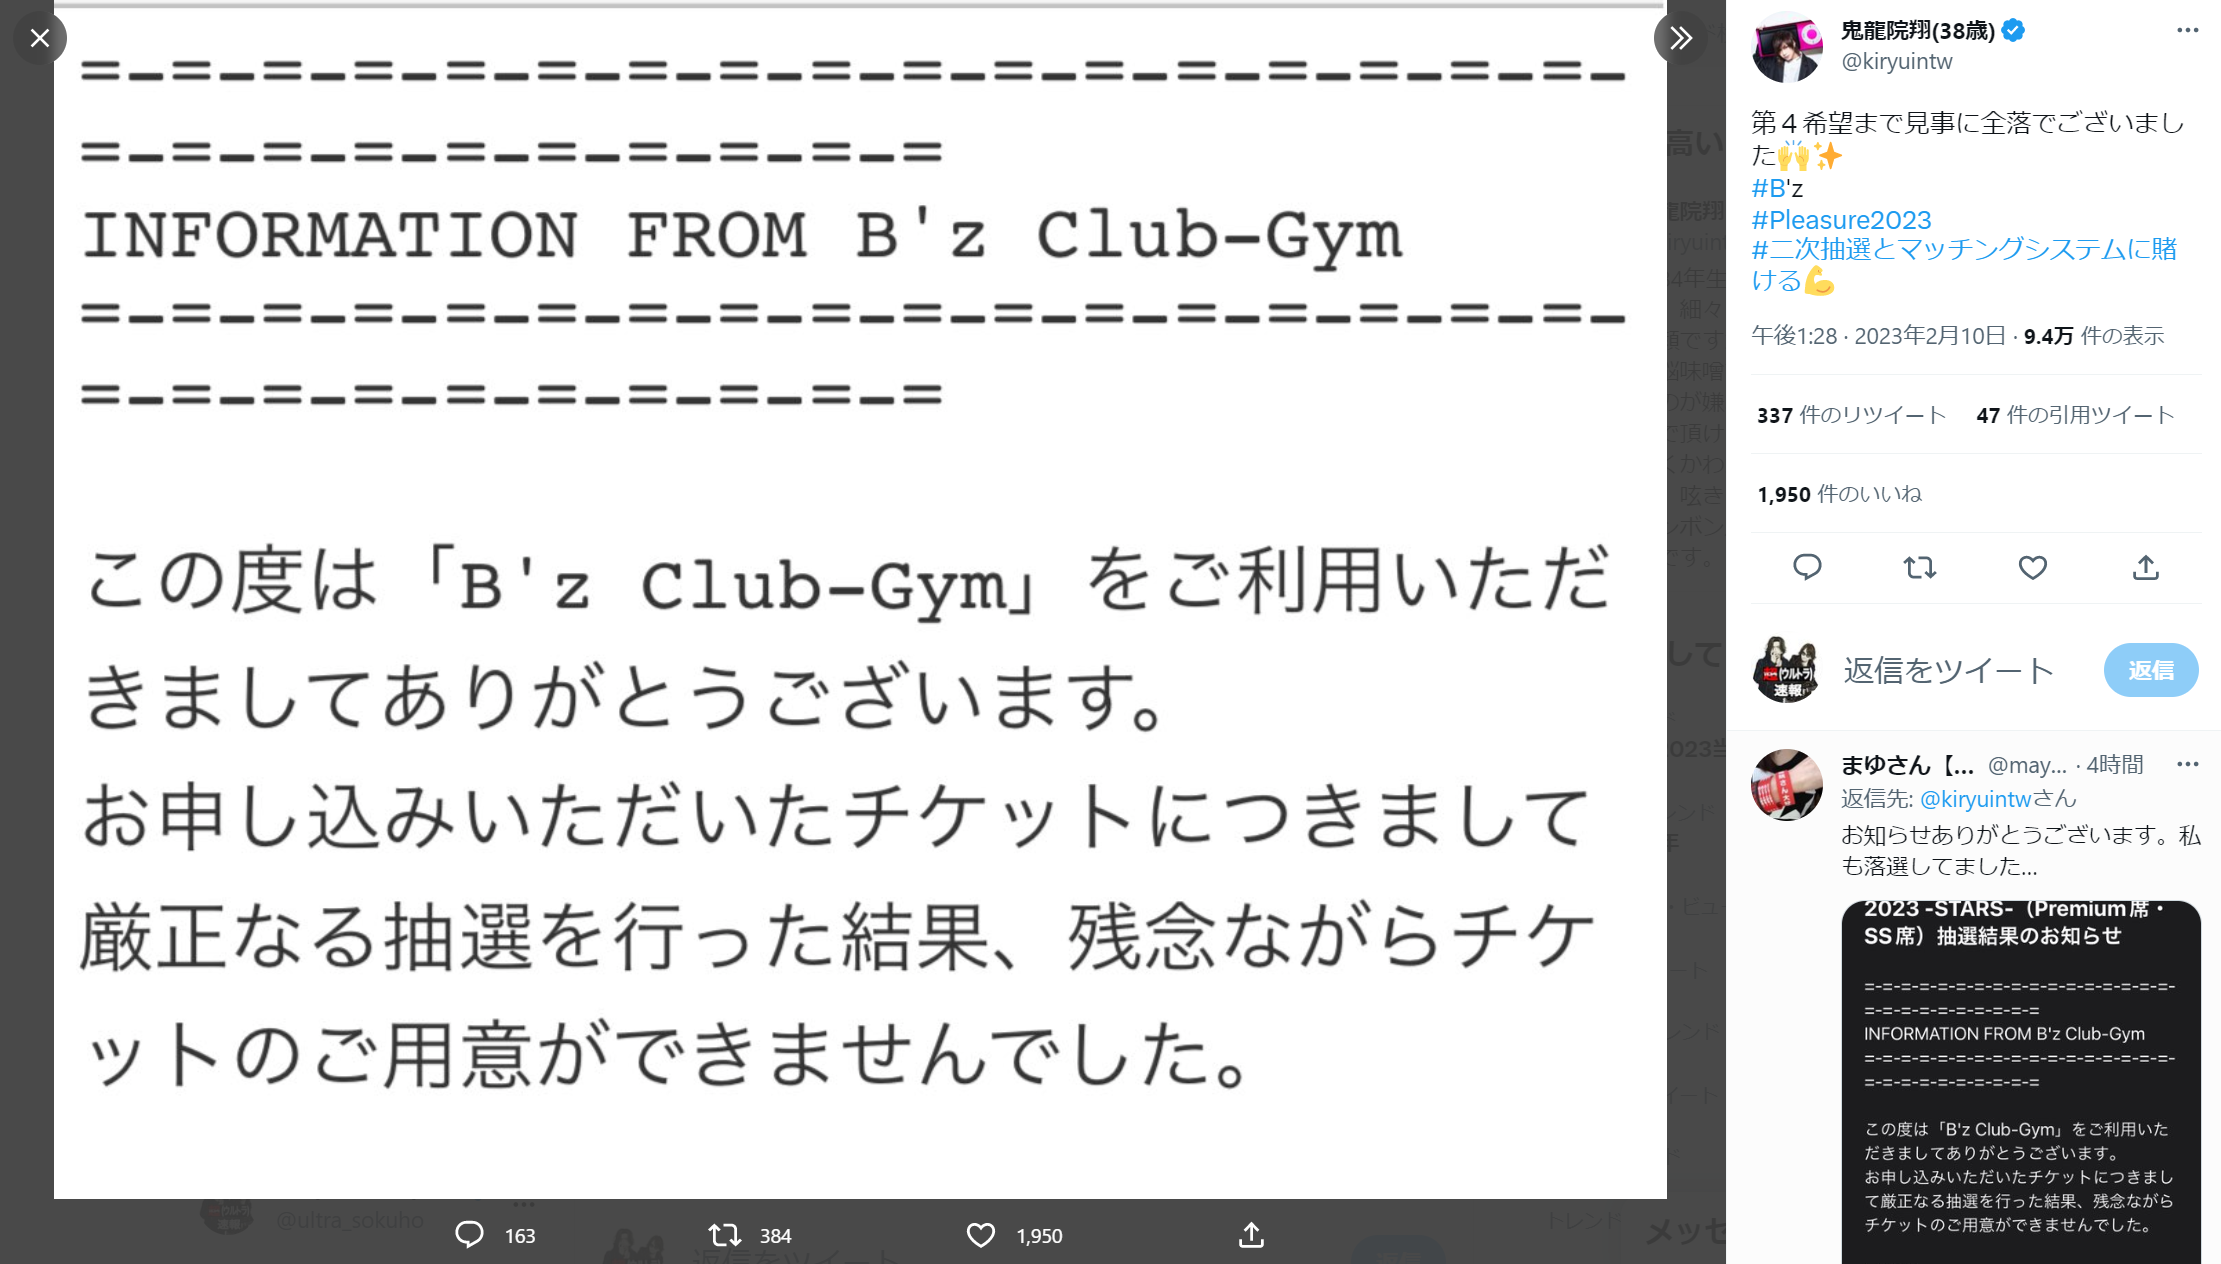 鬼龍院翔が『B'z LIVE-GYM Pleasure 2023 -STARS-』B'z PARTY優先予約に落選したことを告げたTwitter投稿